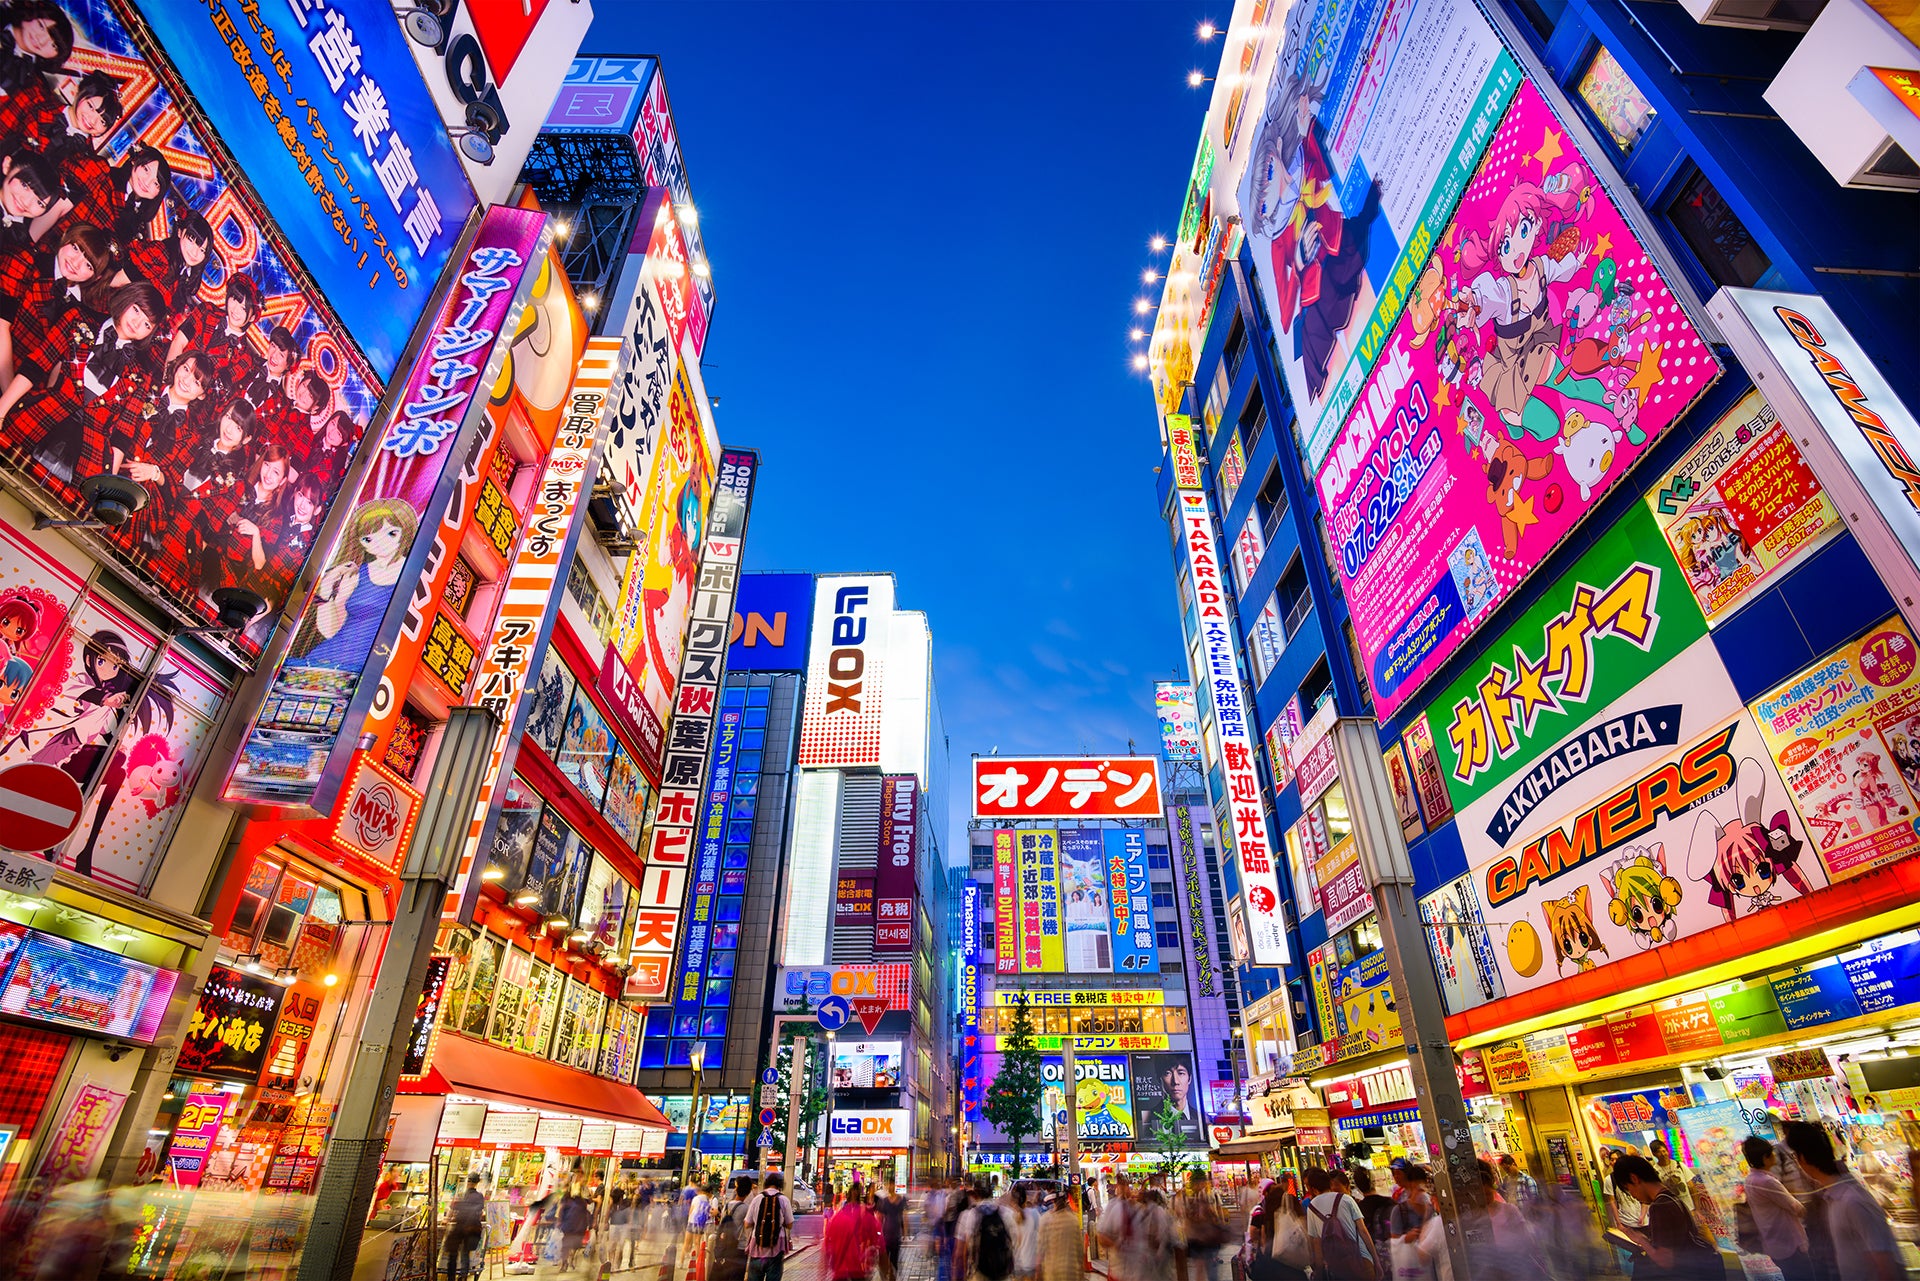 Los ciudadanos cruzan bajo las coloridas señales en Akihabara. El conocido distrito especializado en electrónica vende videojuegos, anime, manga y buenas computadoras. 